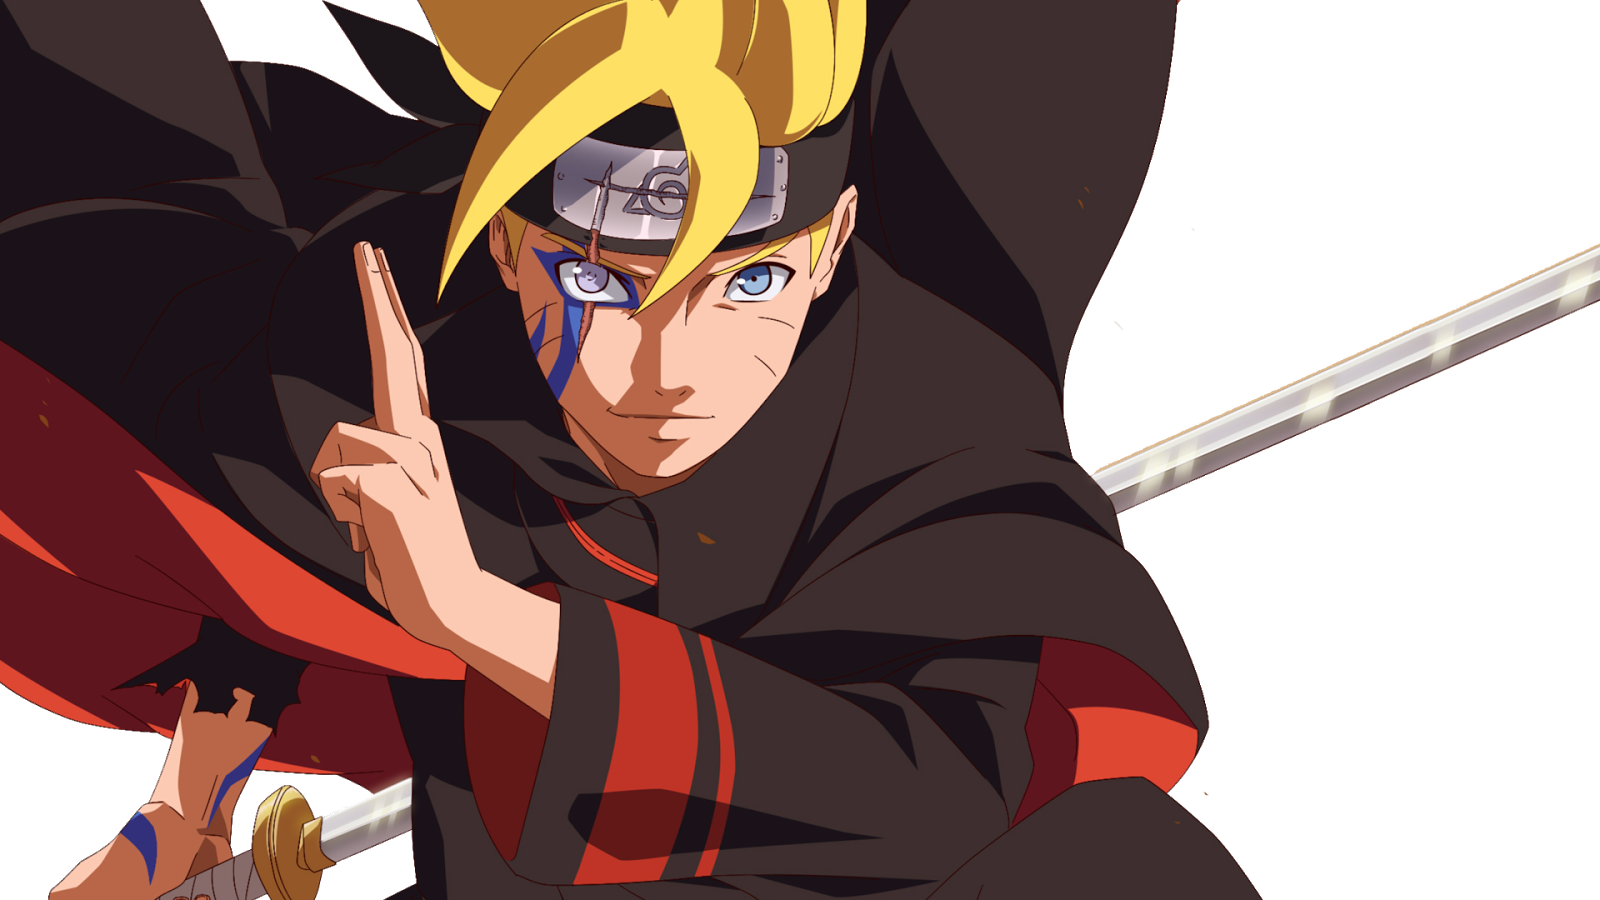 Quỷ thuật, kỹ năng sắc bén và sức mạnh cực độc, đó là lời mở đầu cho Naruto Boruto ninja technique. Hãy khám phá những bí mật ninja bên trong series này và nhận ra tất cả sẽ là sự khởi đầu cho hành trình ninja của bạn.